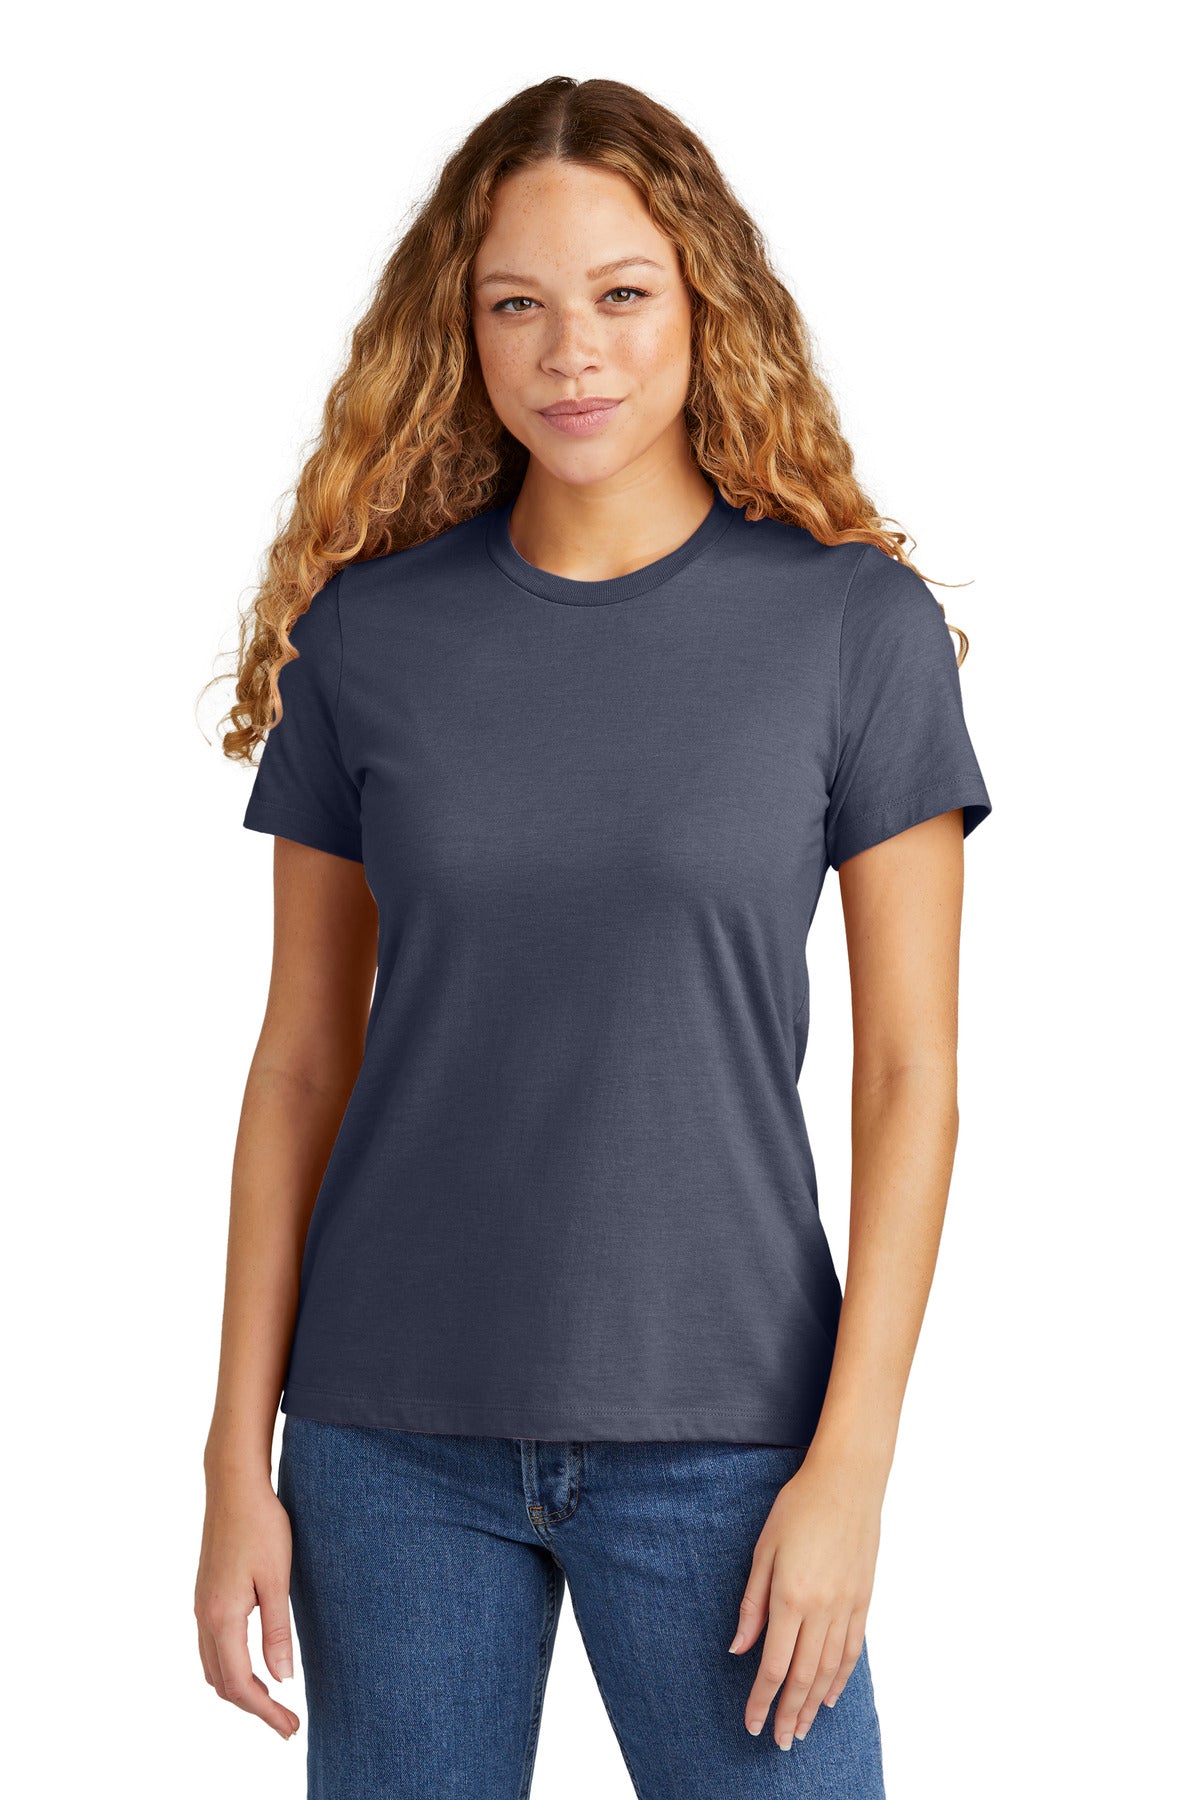 Gildan   Softstyle   Women's CVC T-Shirt 67000L